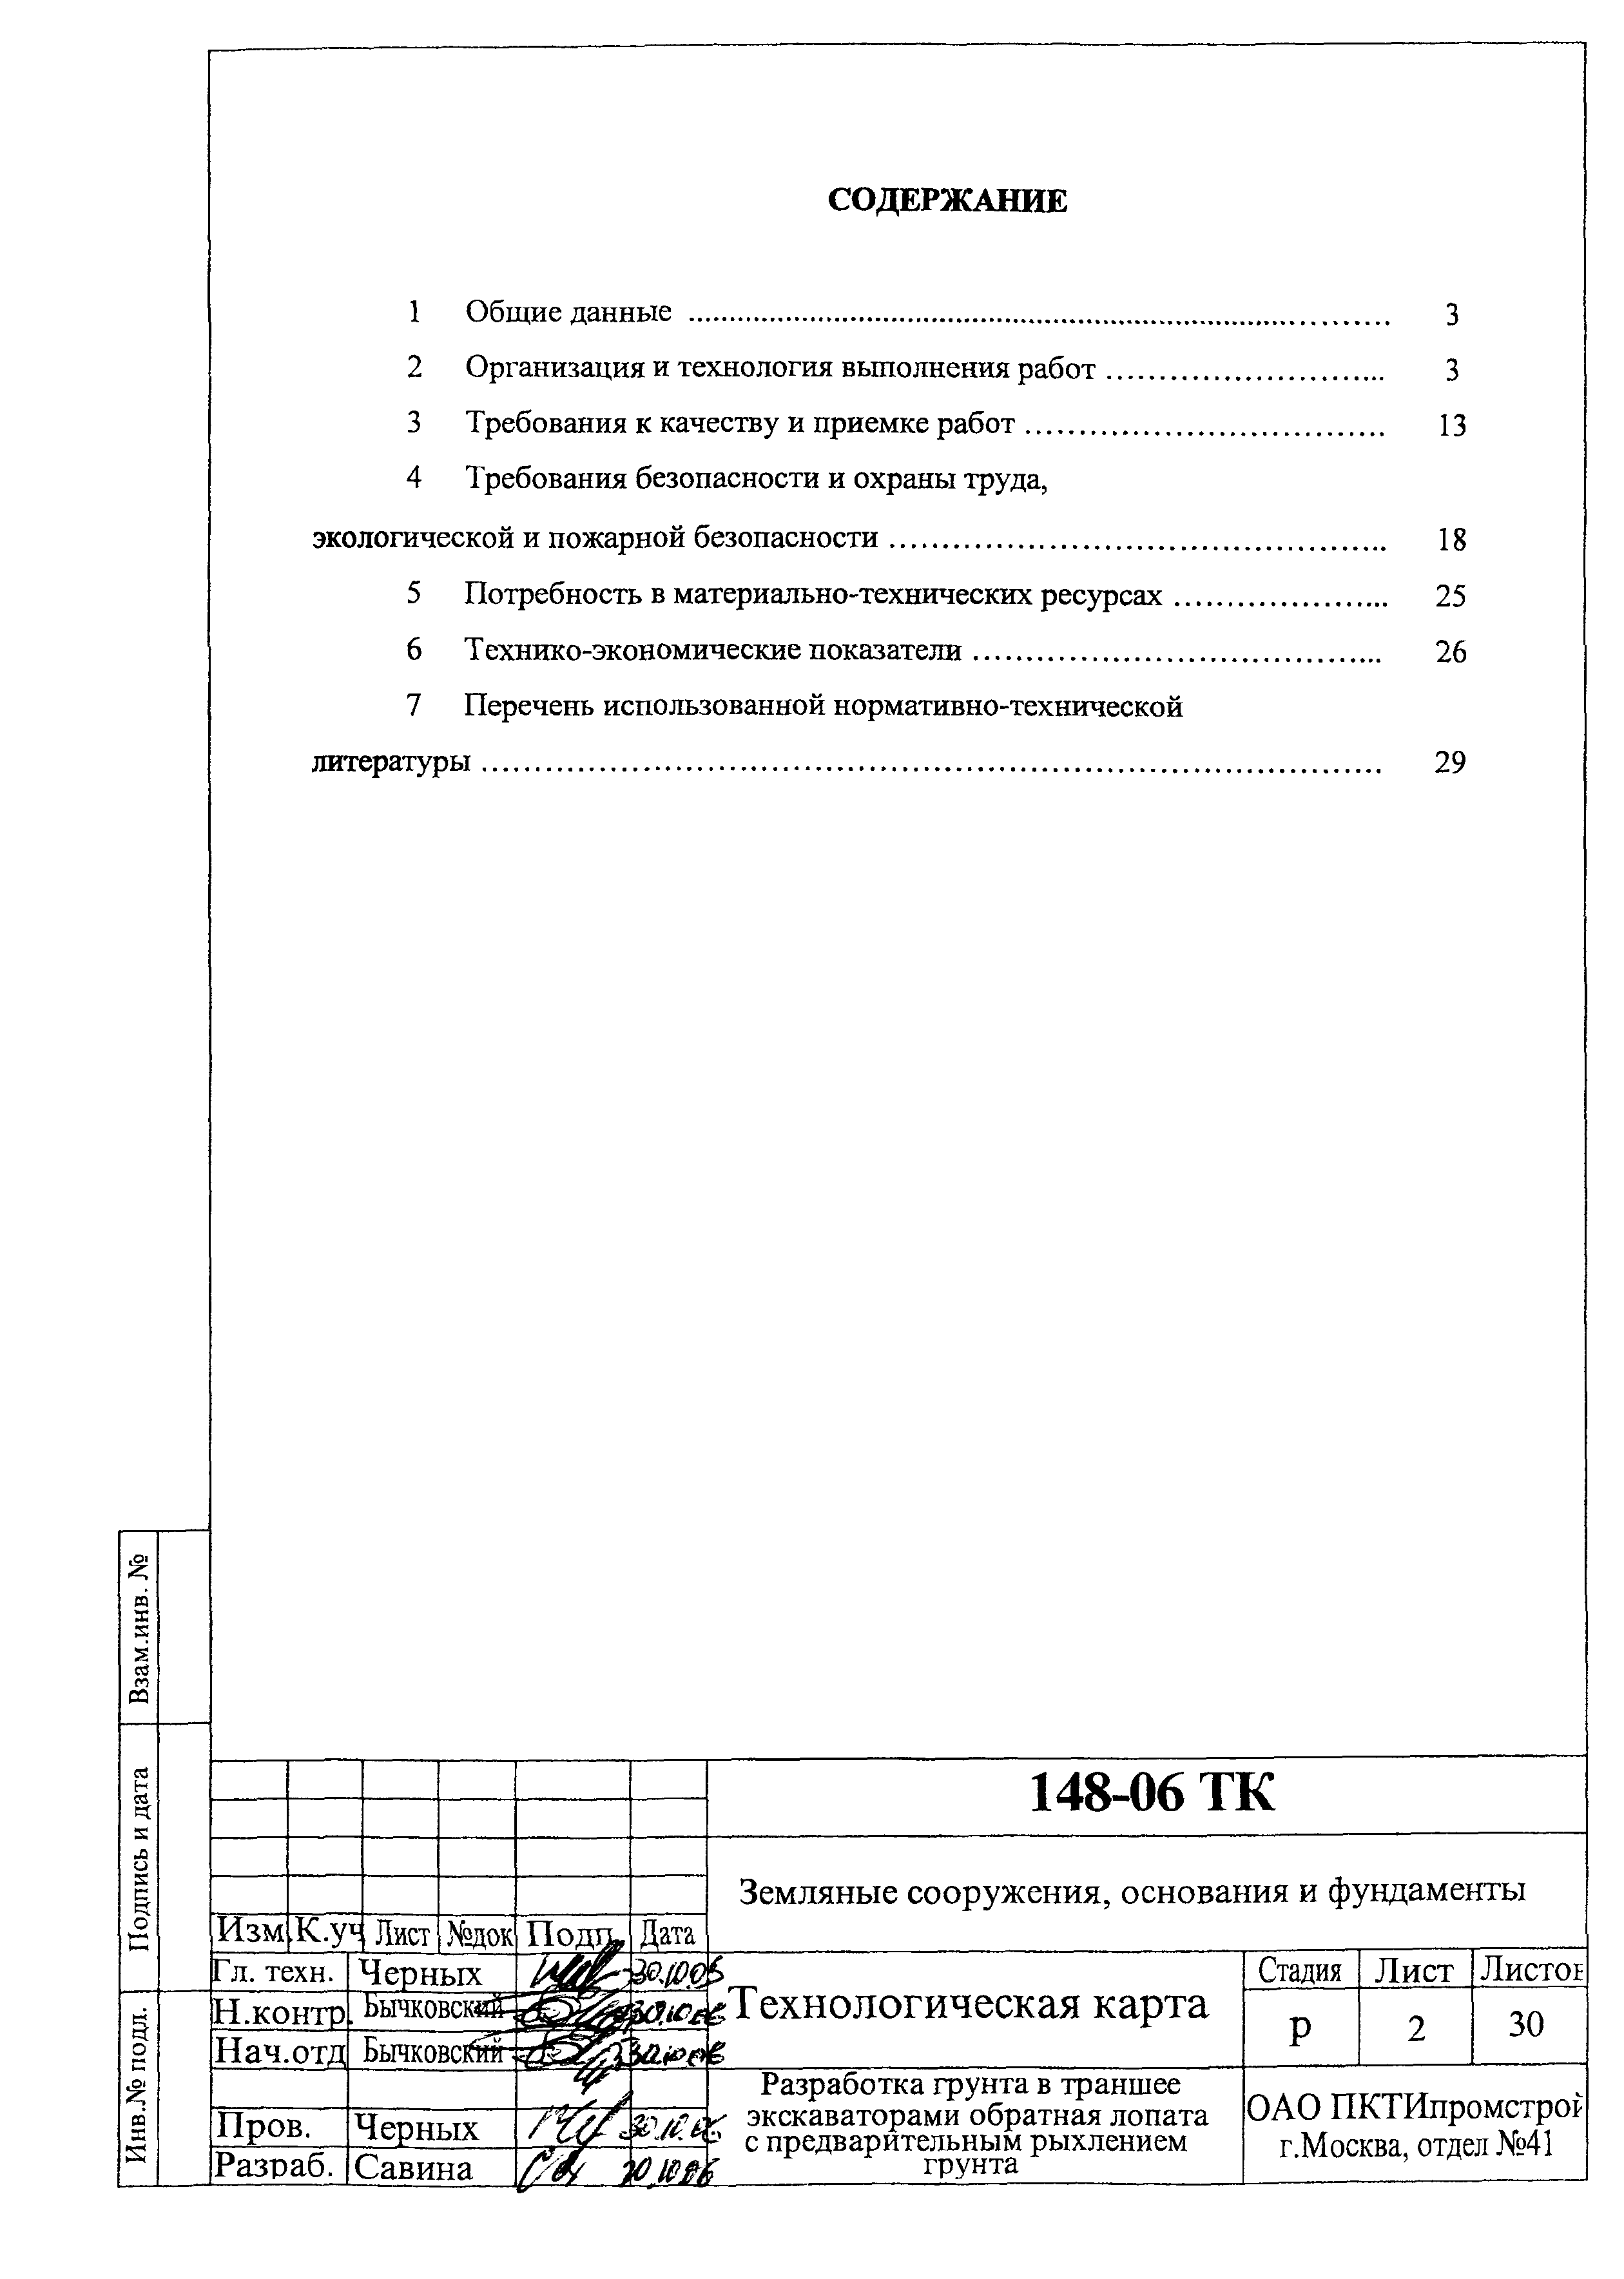 Технологическая карта 148-06 ТК